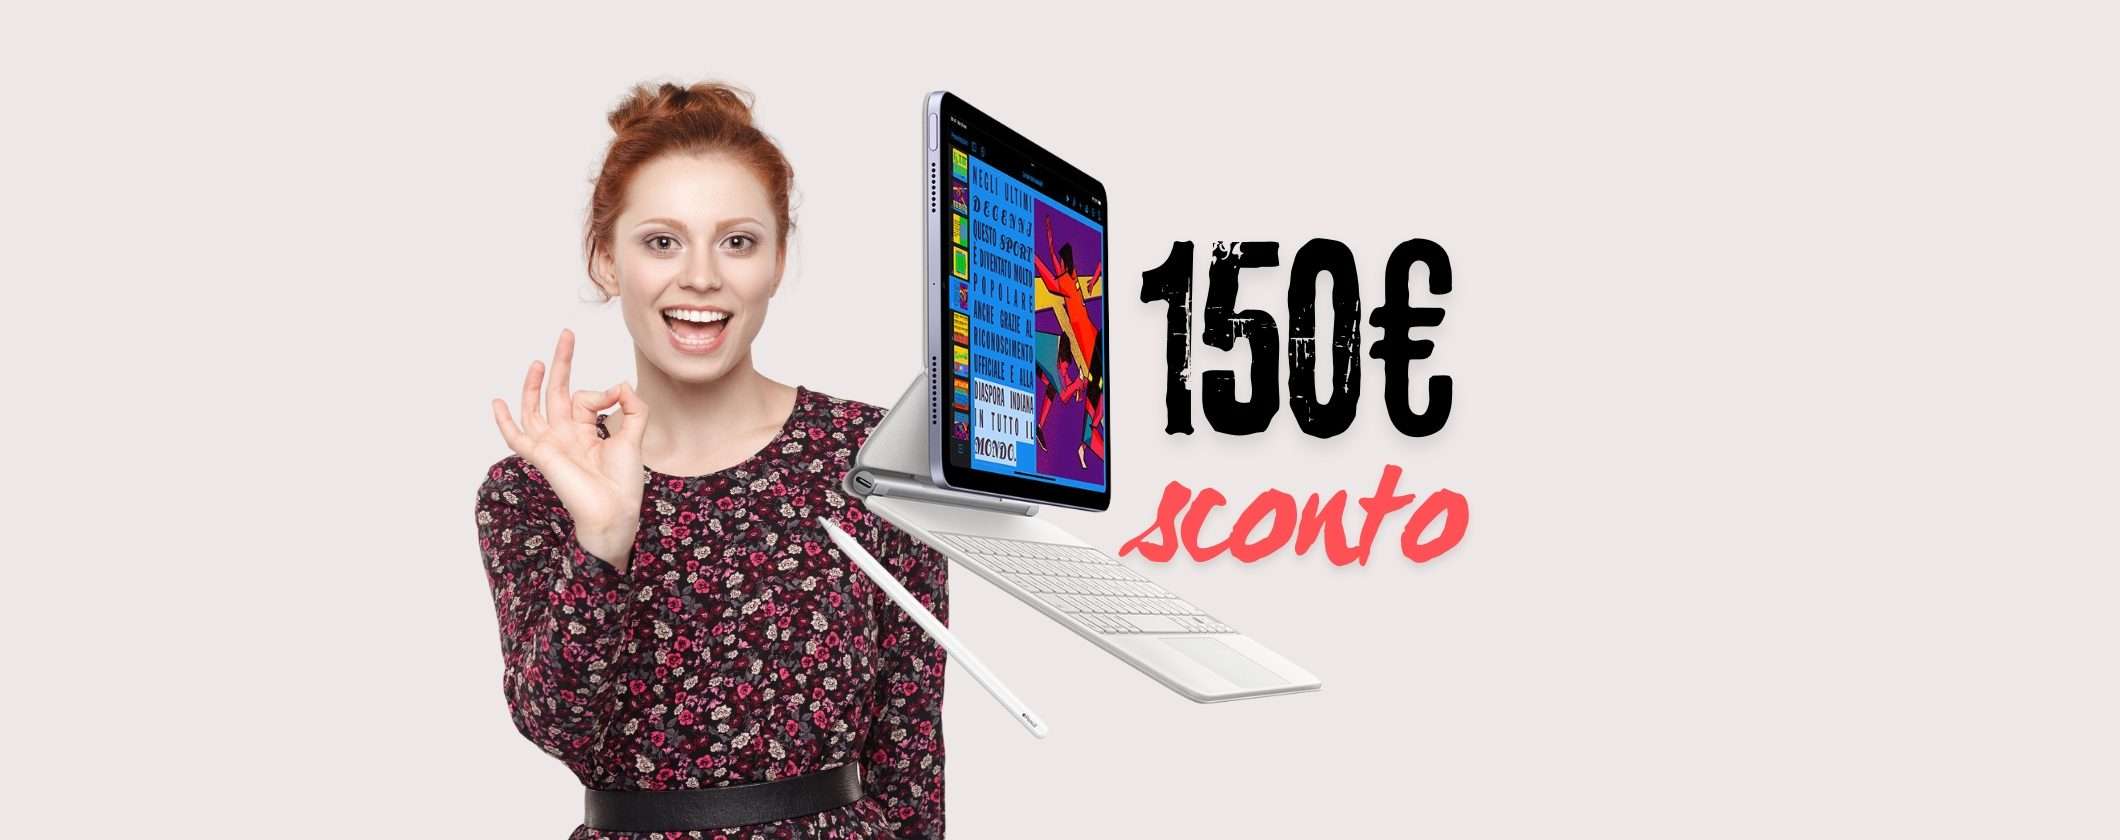 iPad Air 64GB: 150€ di SCONTO sull'unghia con Unieuro